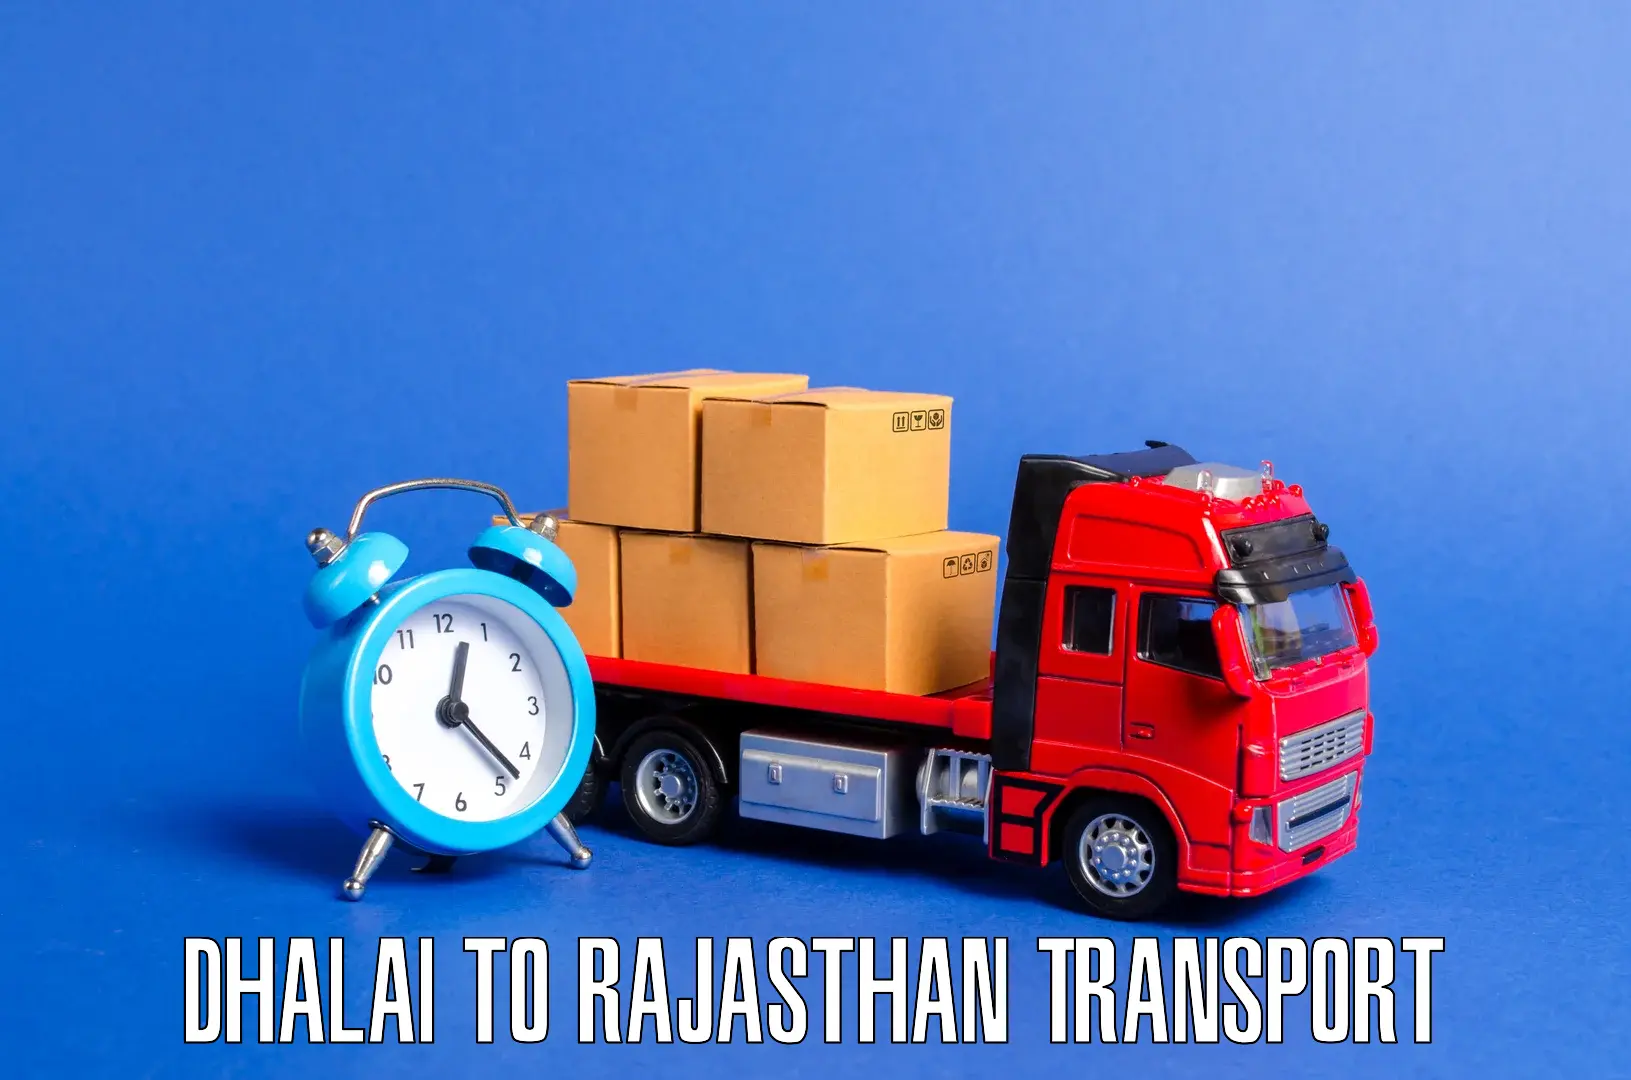 Nearby transport service Dhalai to Pratapgarh Rajasthan